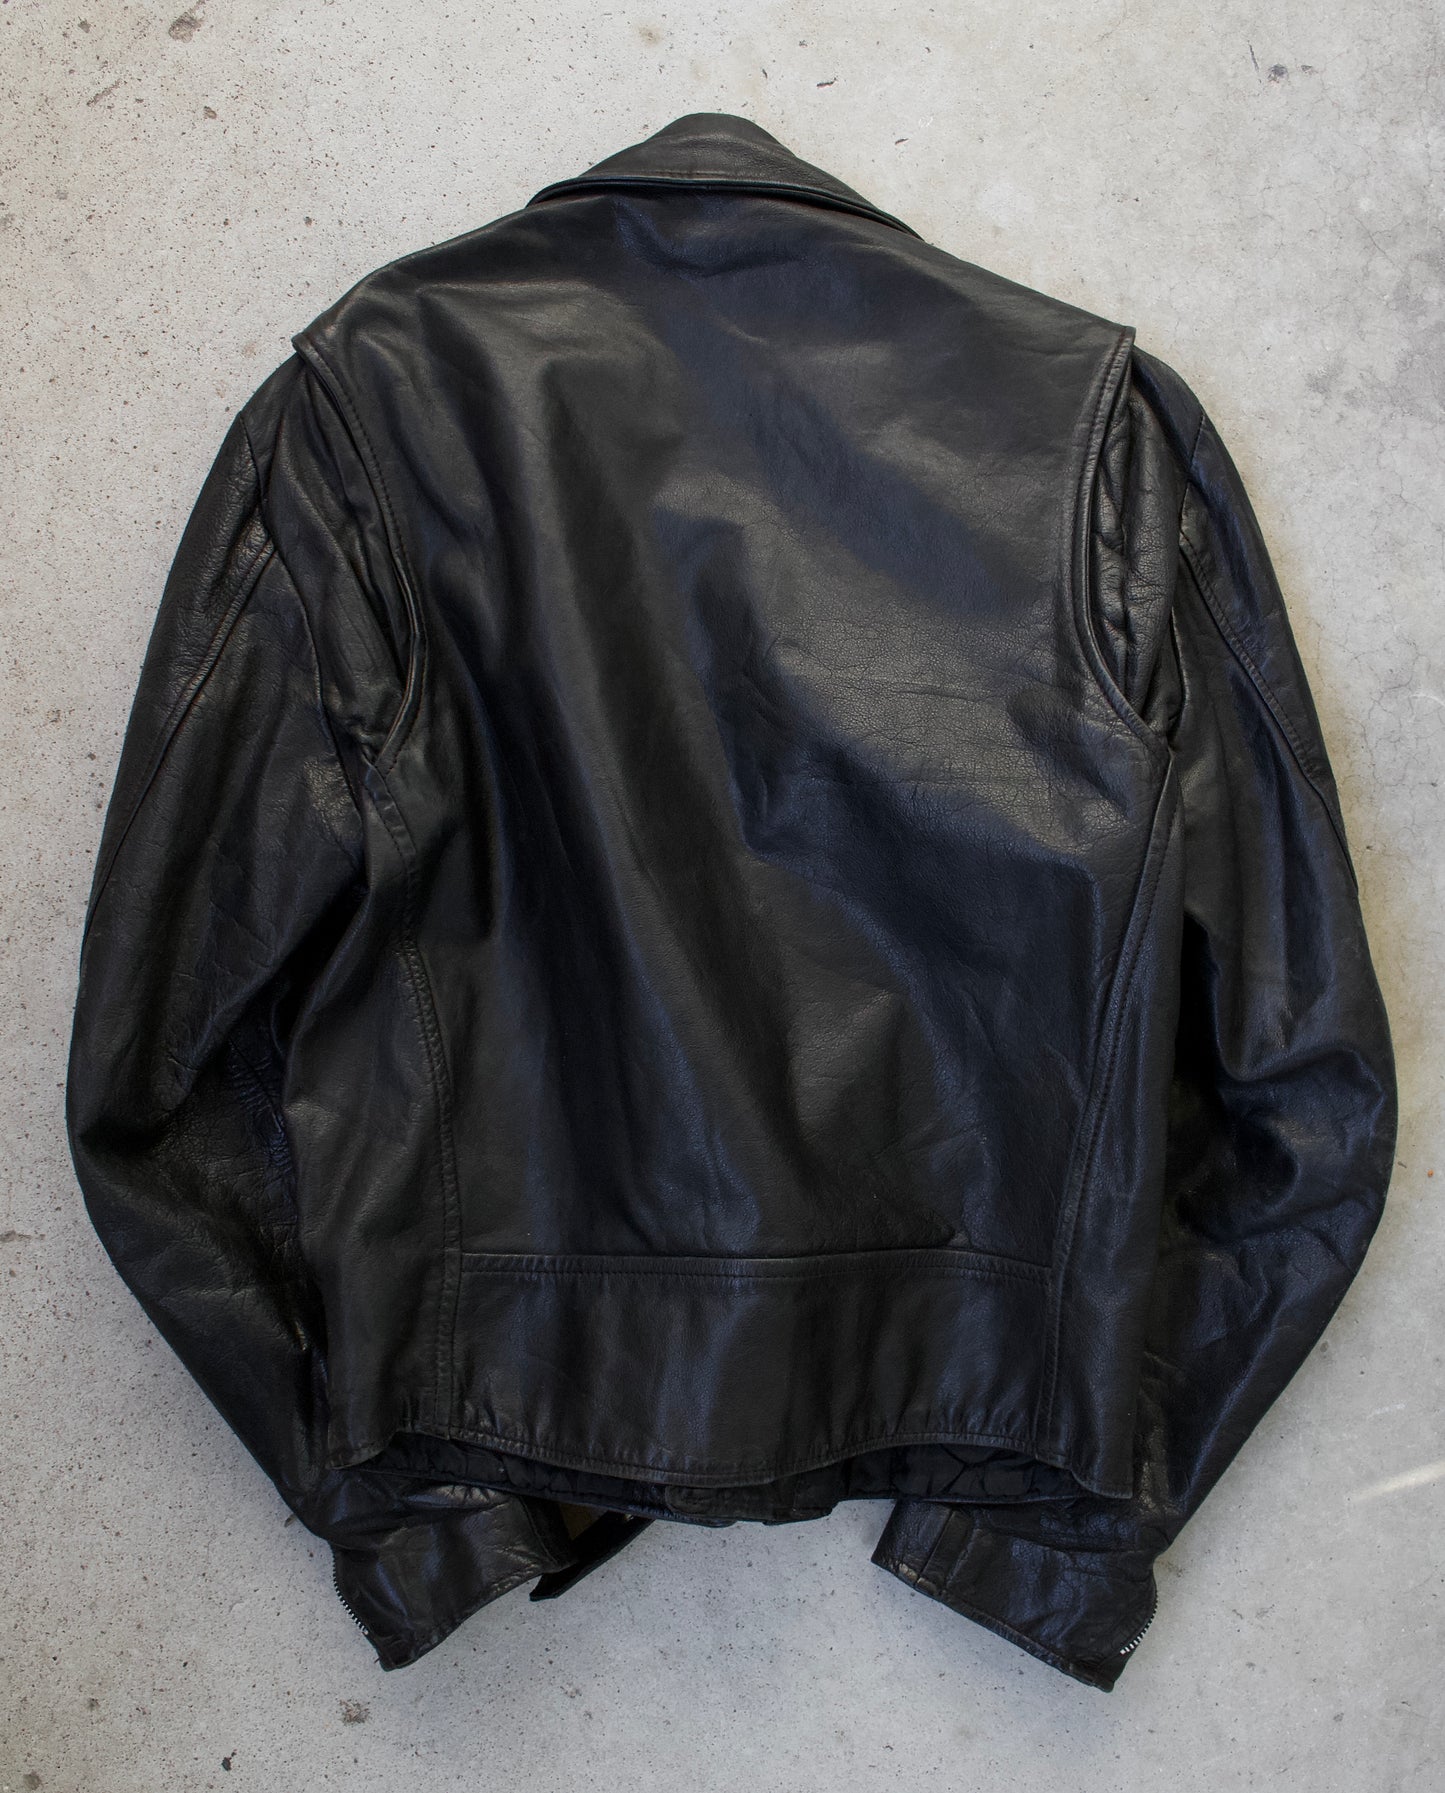 Vintage 90s Biker Leather Jacket